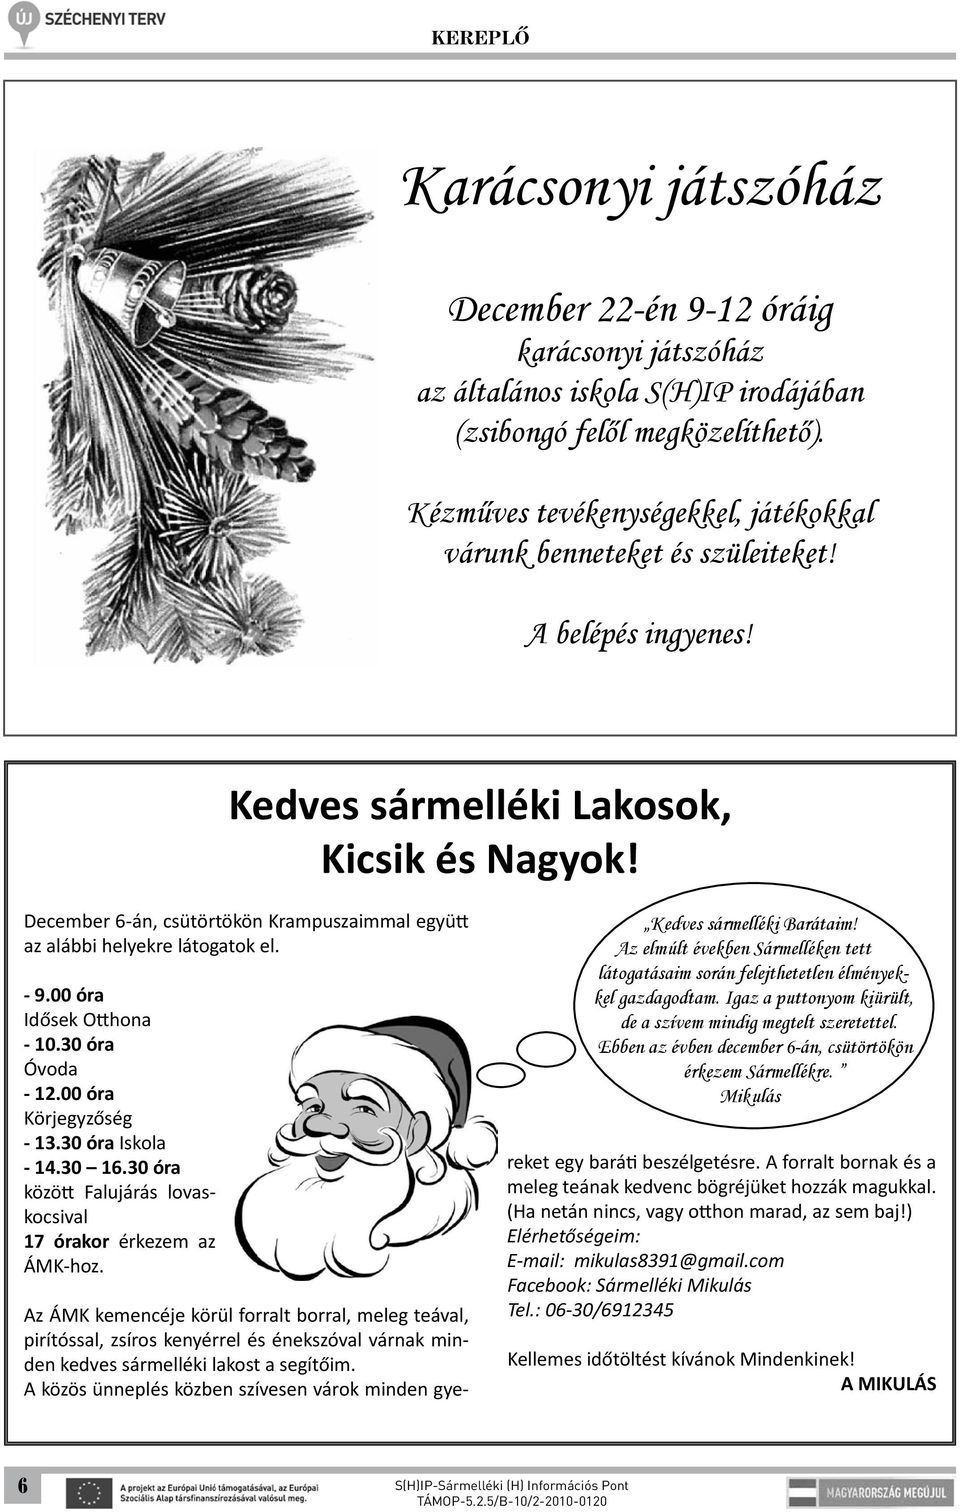 December 6-án, csütörtökön Krampuszaimmal együtt az alábbi helyekre látogatok el. - 9.00 óra Idősek Otthona - 10.30 óra Óvoda - 12.00 óra Körjegyzőség - 13.30 óra Iskola - 14.30 16.